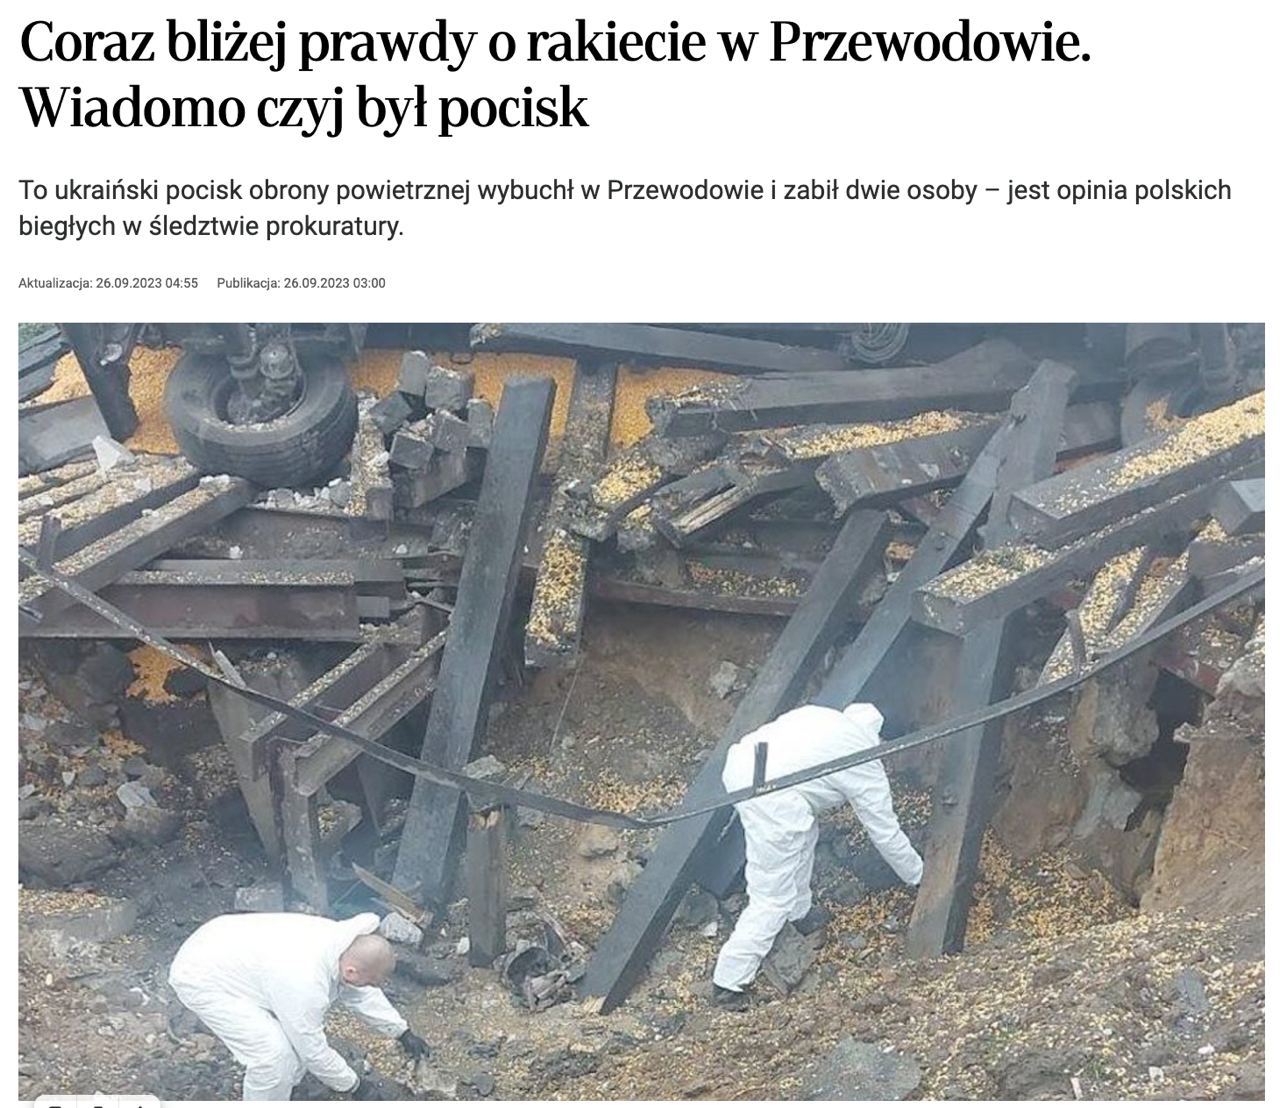 Rzeczpospolita сообщила, что в прошлом году ракета ПВО Украины убила двух человек в Пшеводуве